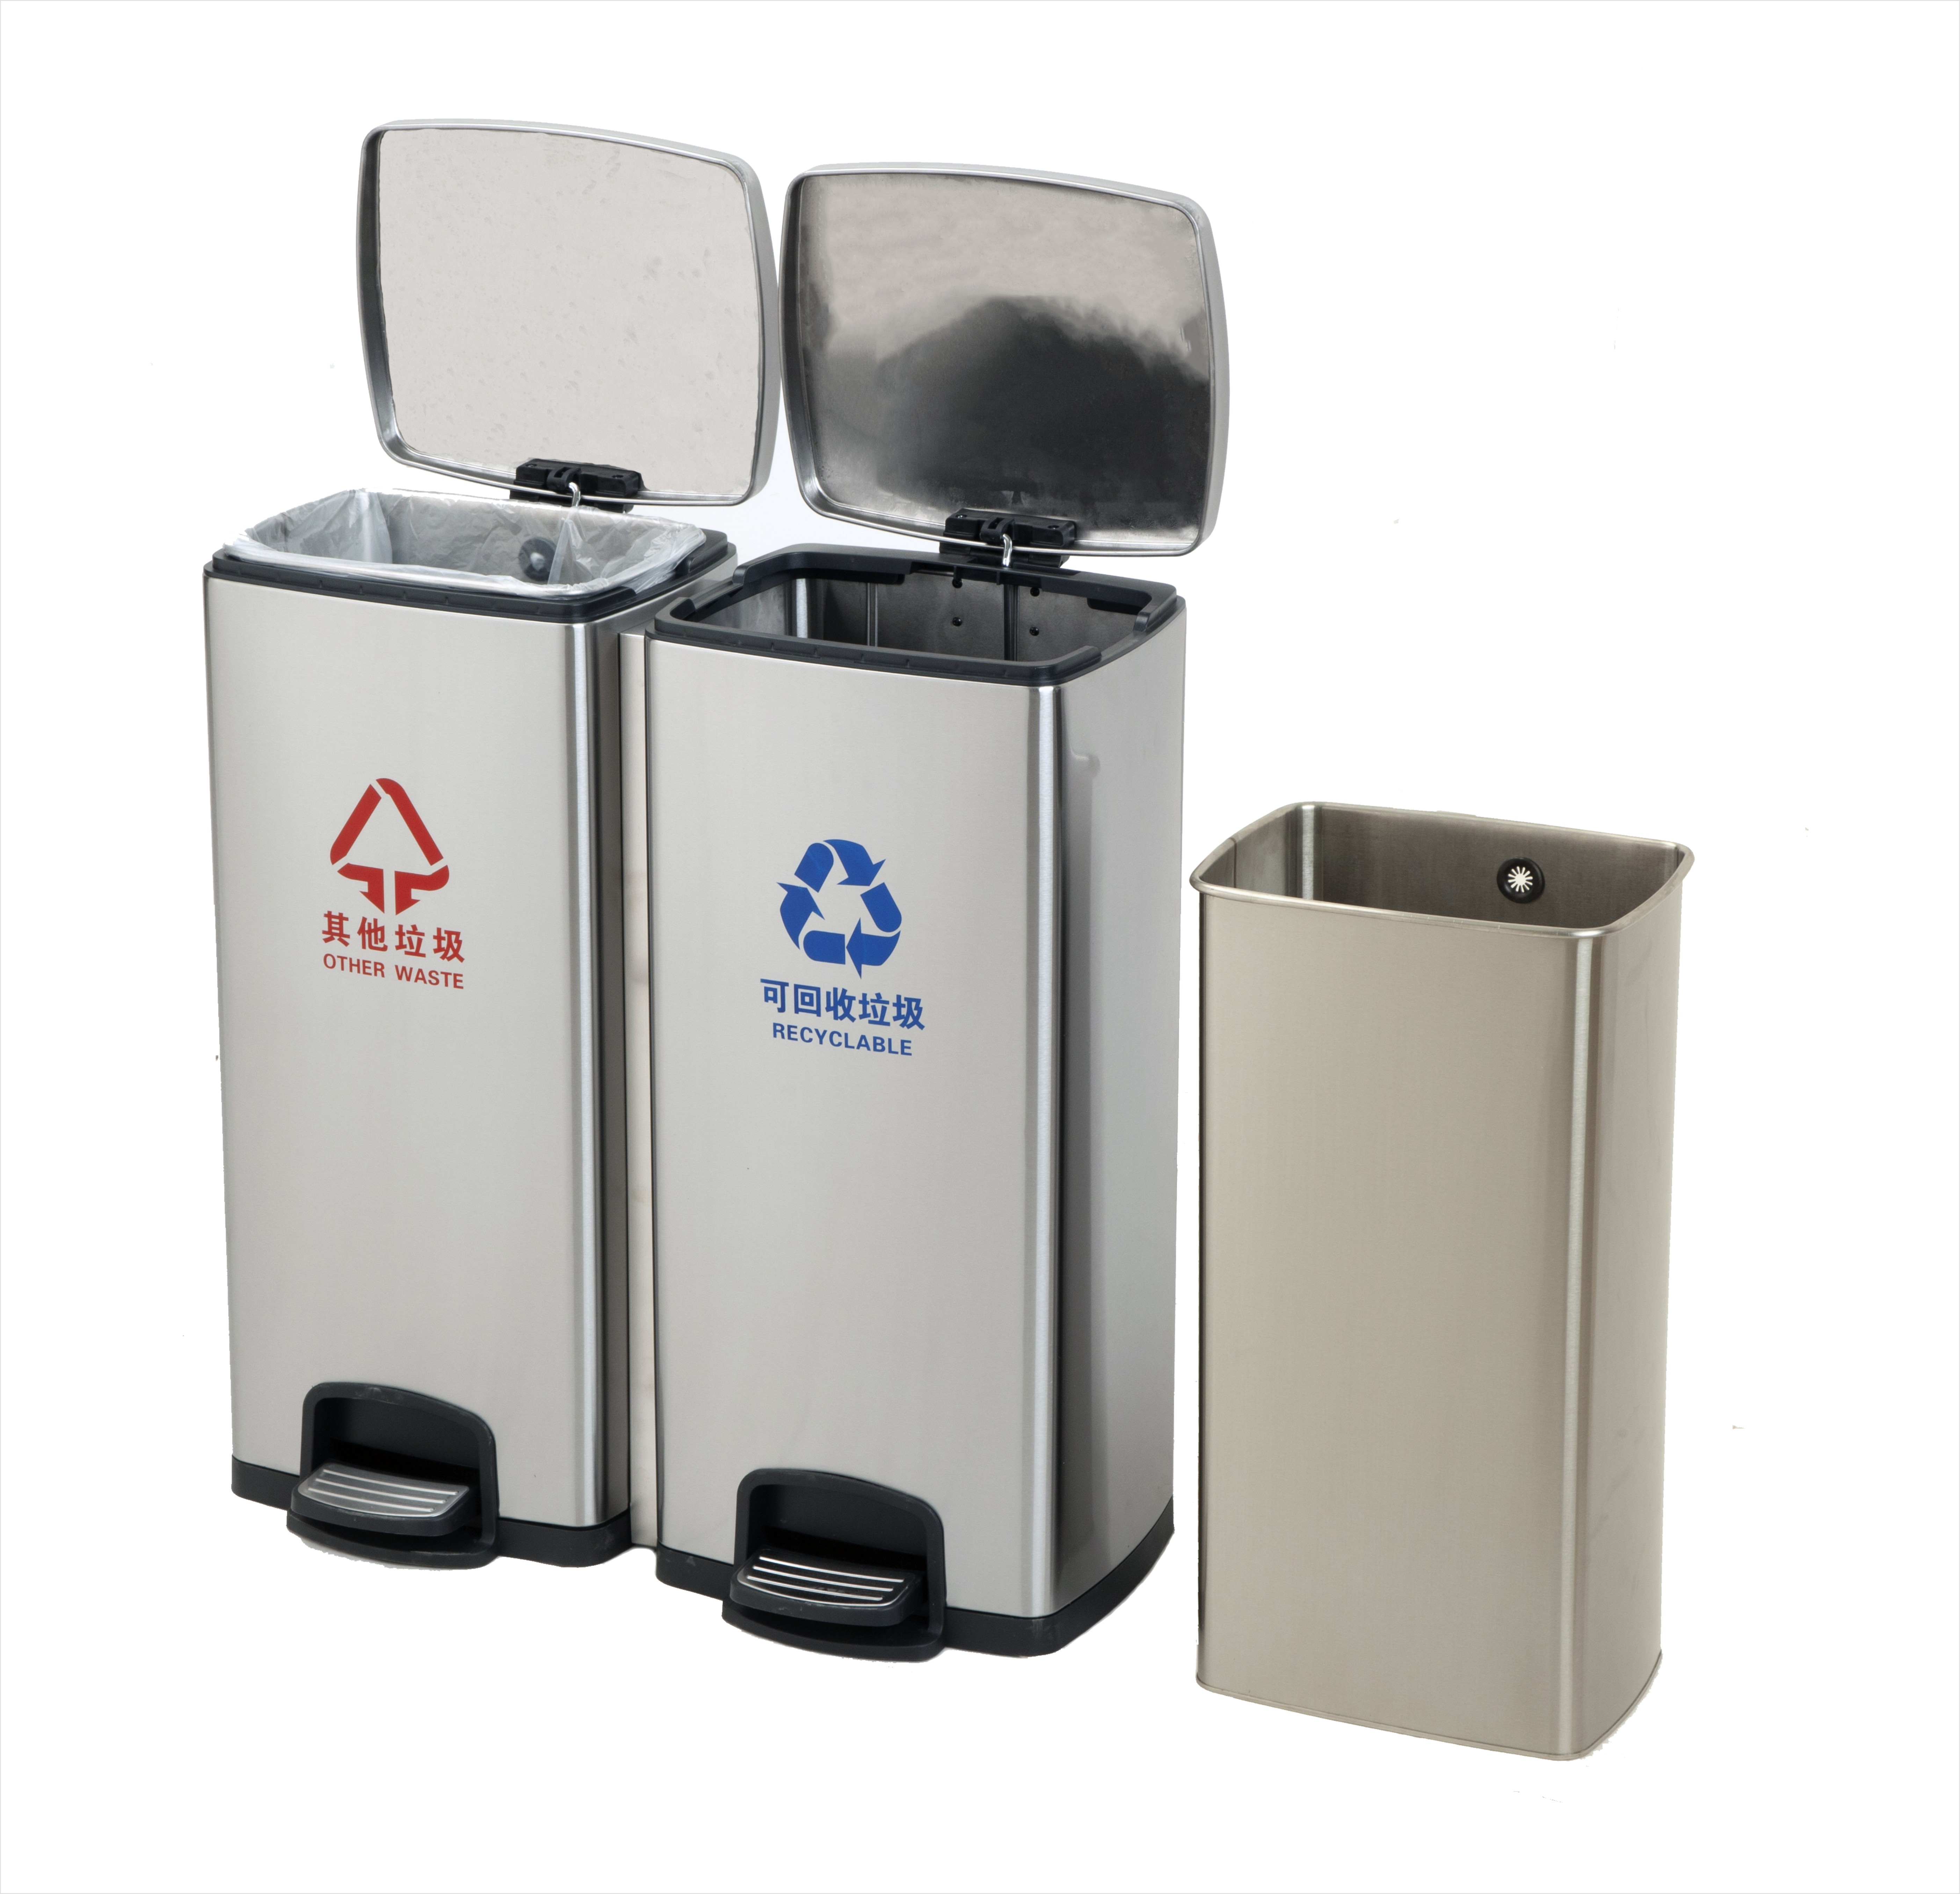 Triple 24 gallons en acier inoxydable pied contrôle poubelle salle de bain cuisine européenne poubelle silencieuse ménage poubelle cuisine